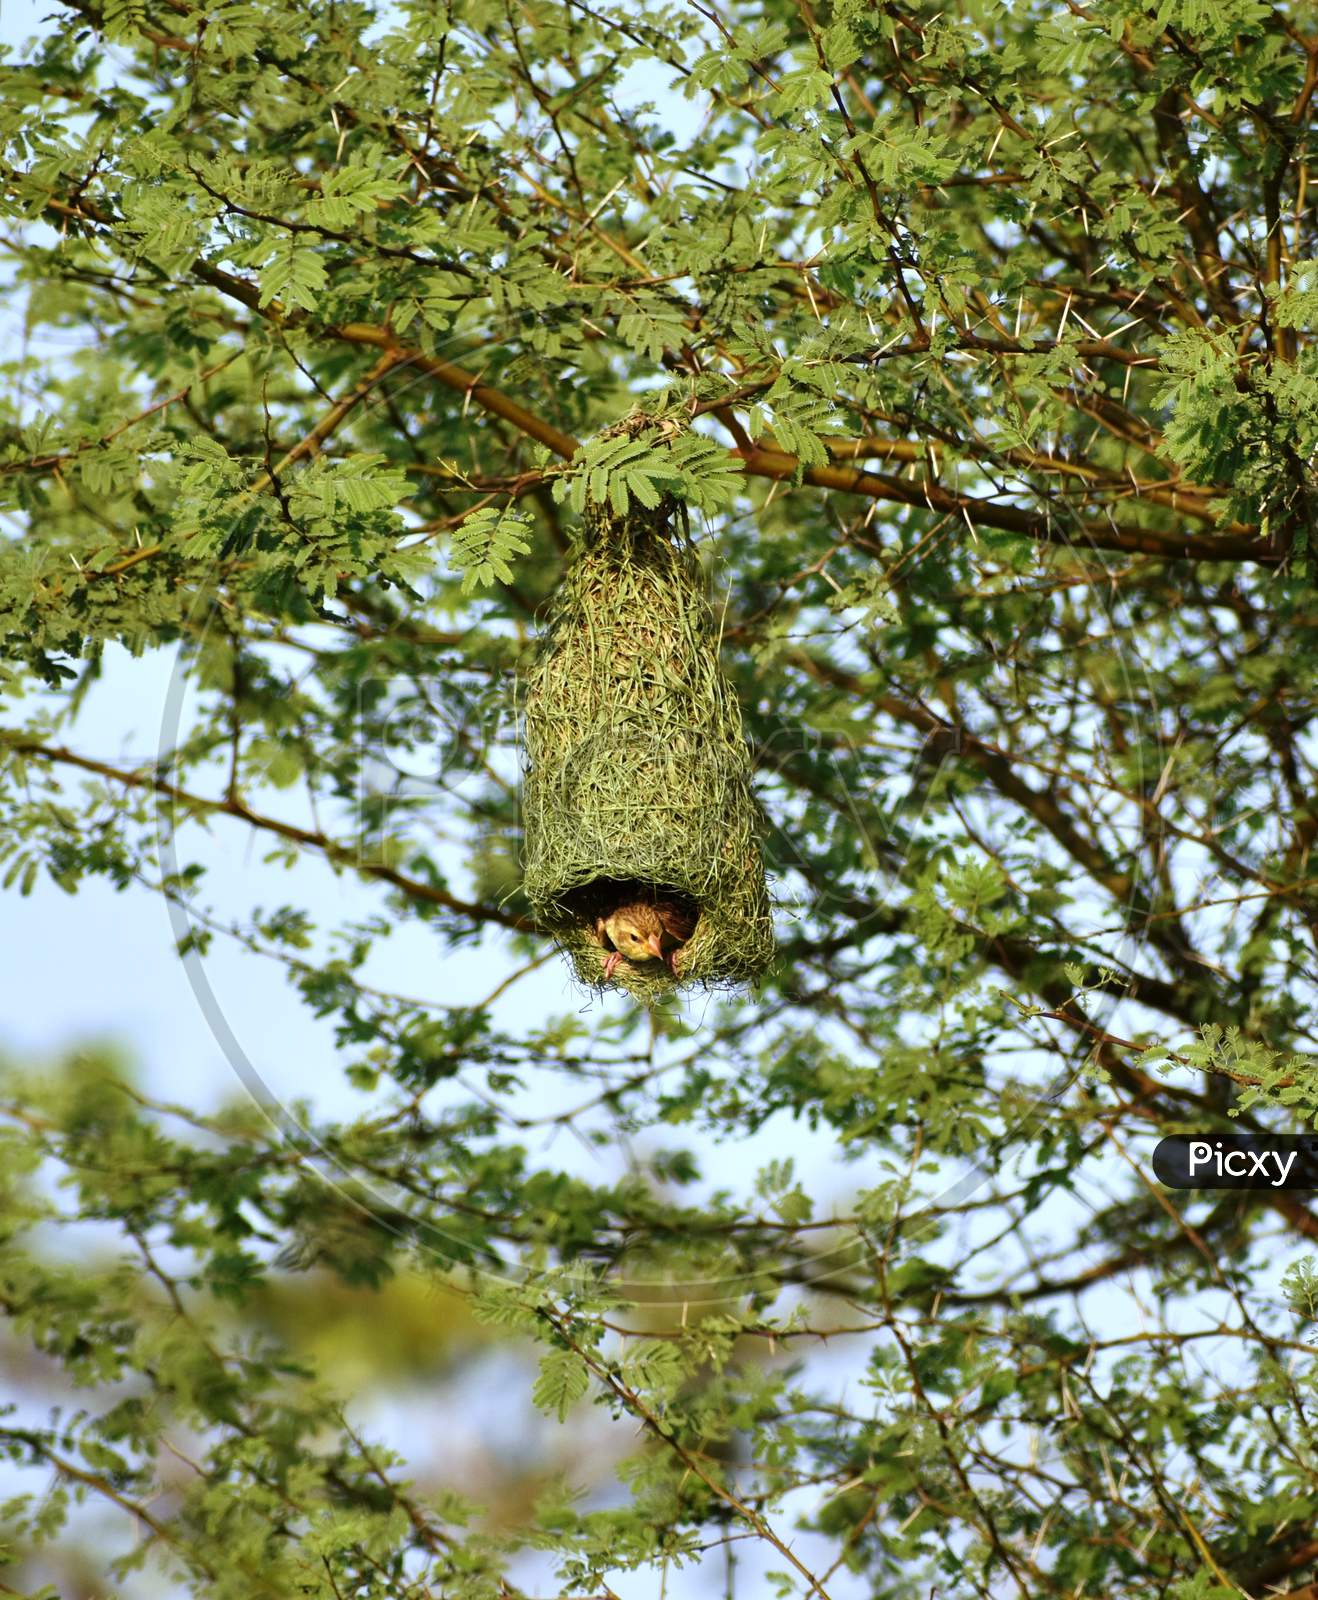 Hanging green nest of a Weaver bird